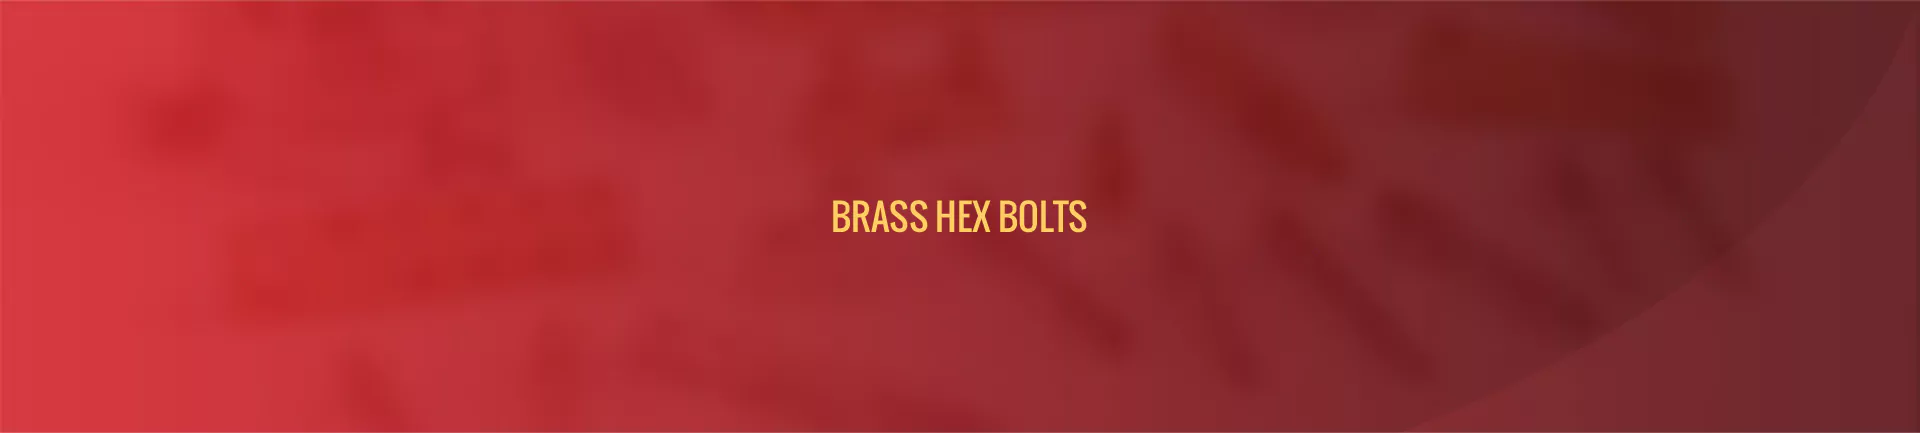 brass-hex-bolts-banner